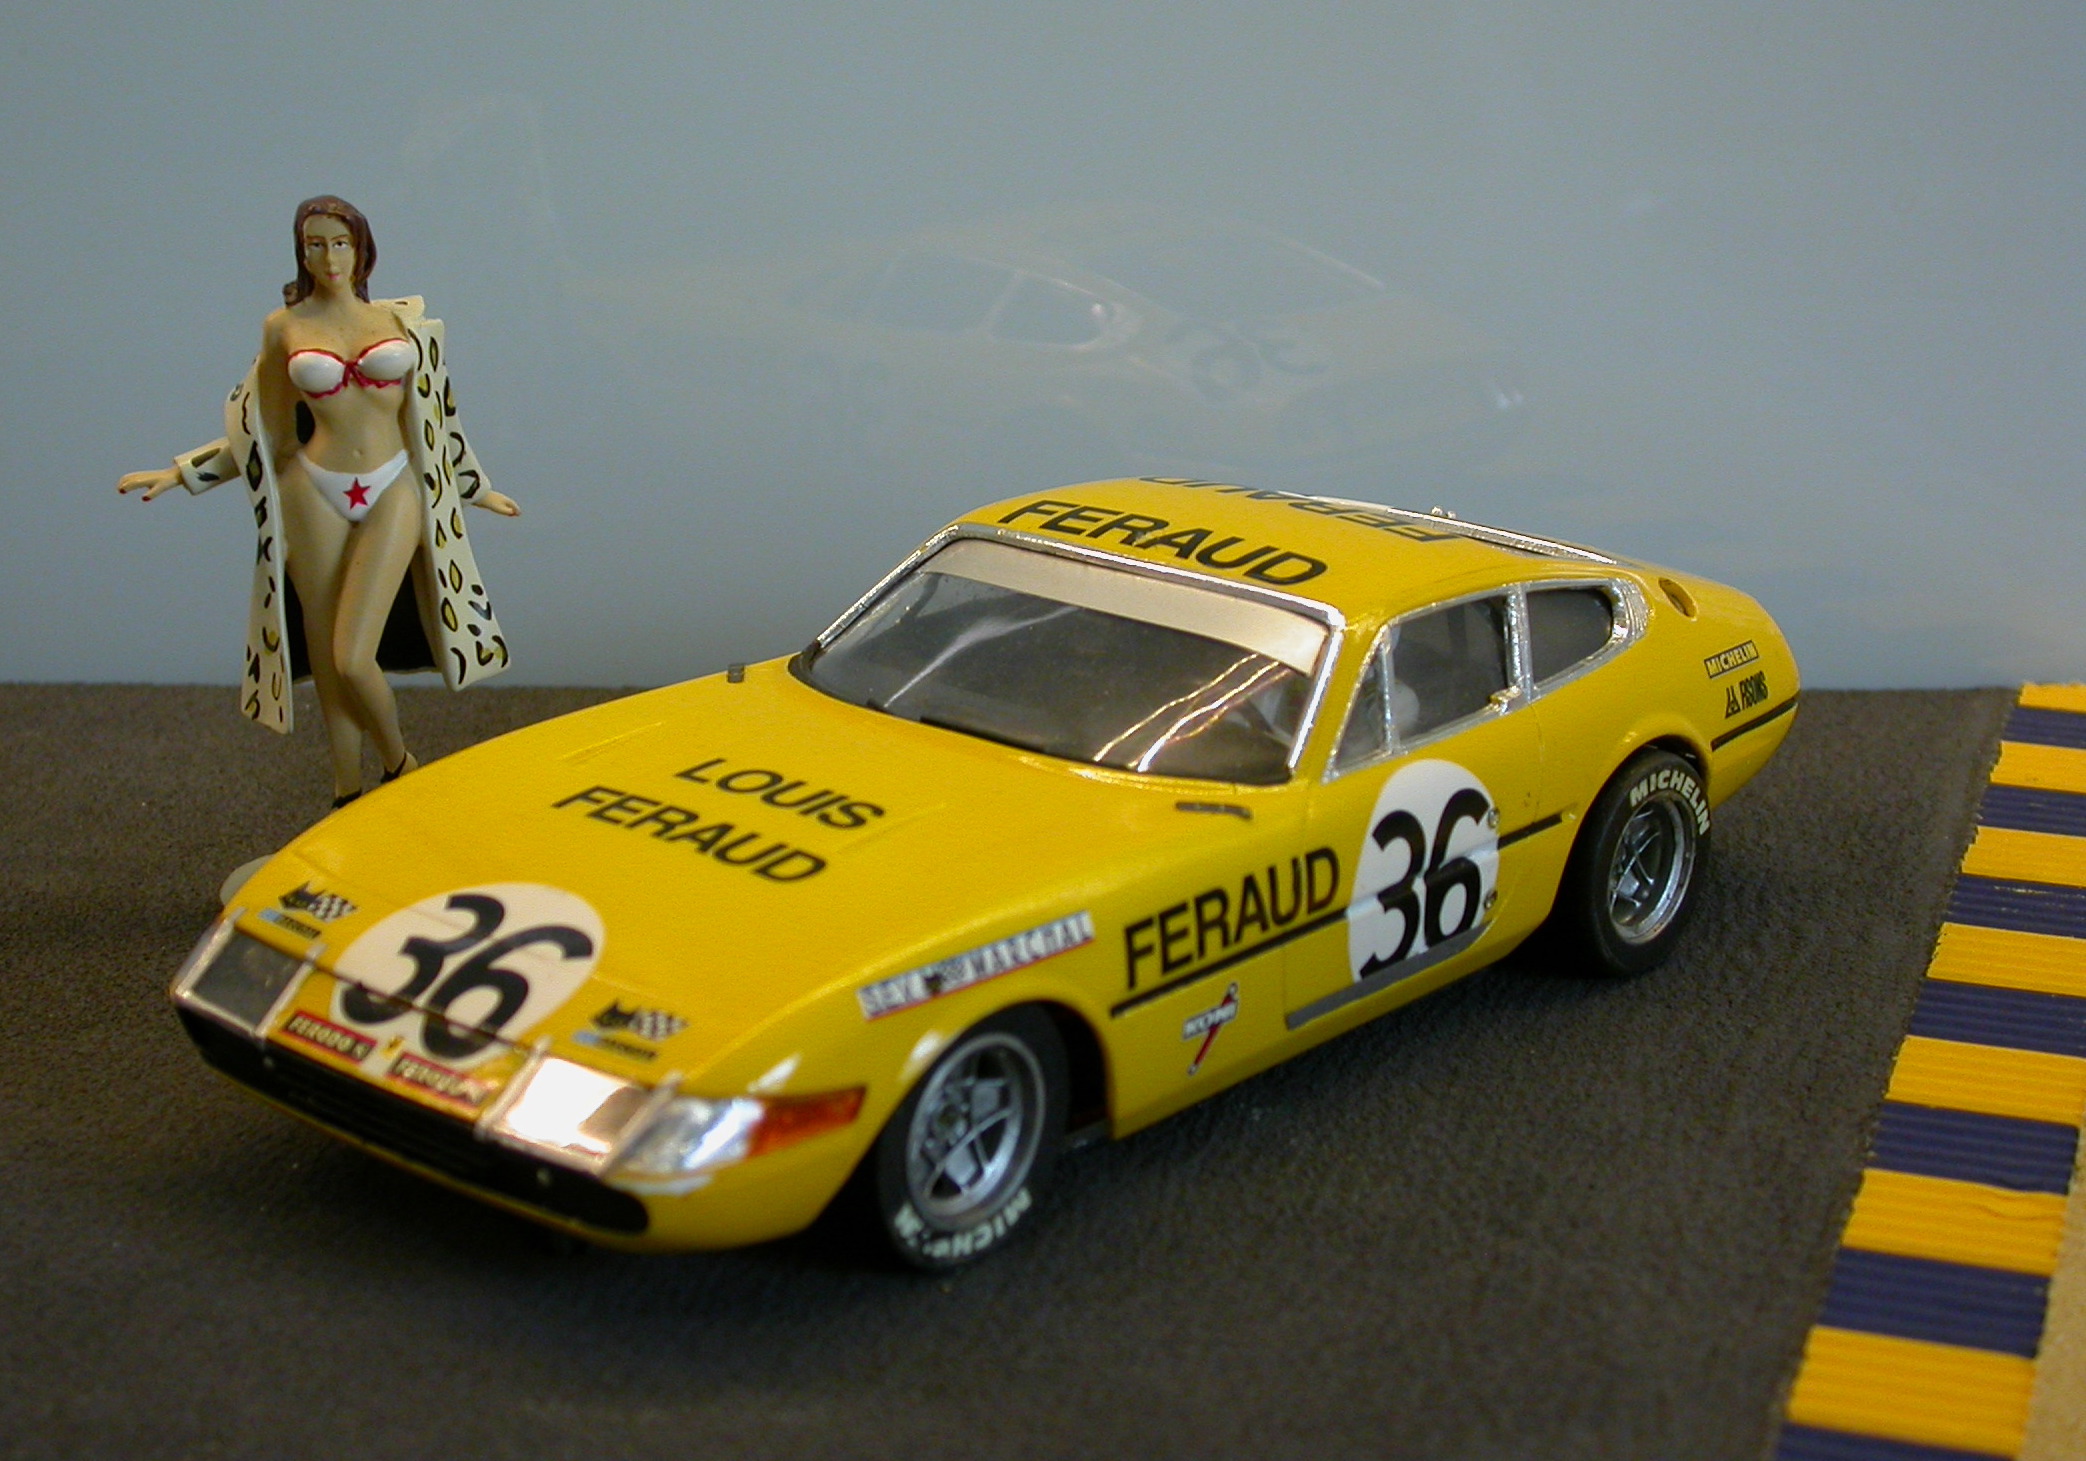 Ferrari 365 GTB Feraud - 36  - Le Mans 1972 - 1